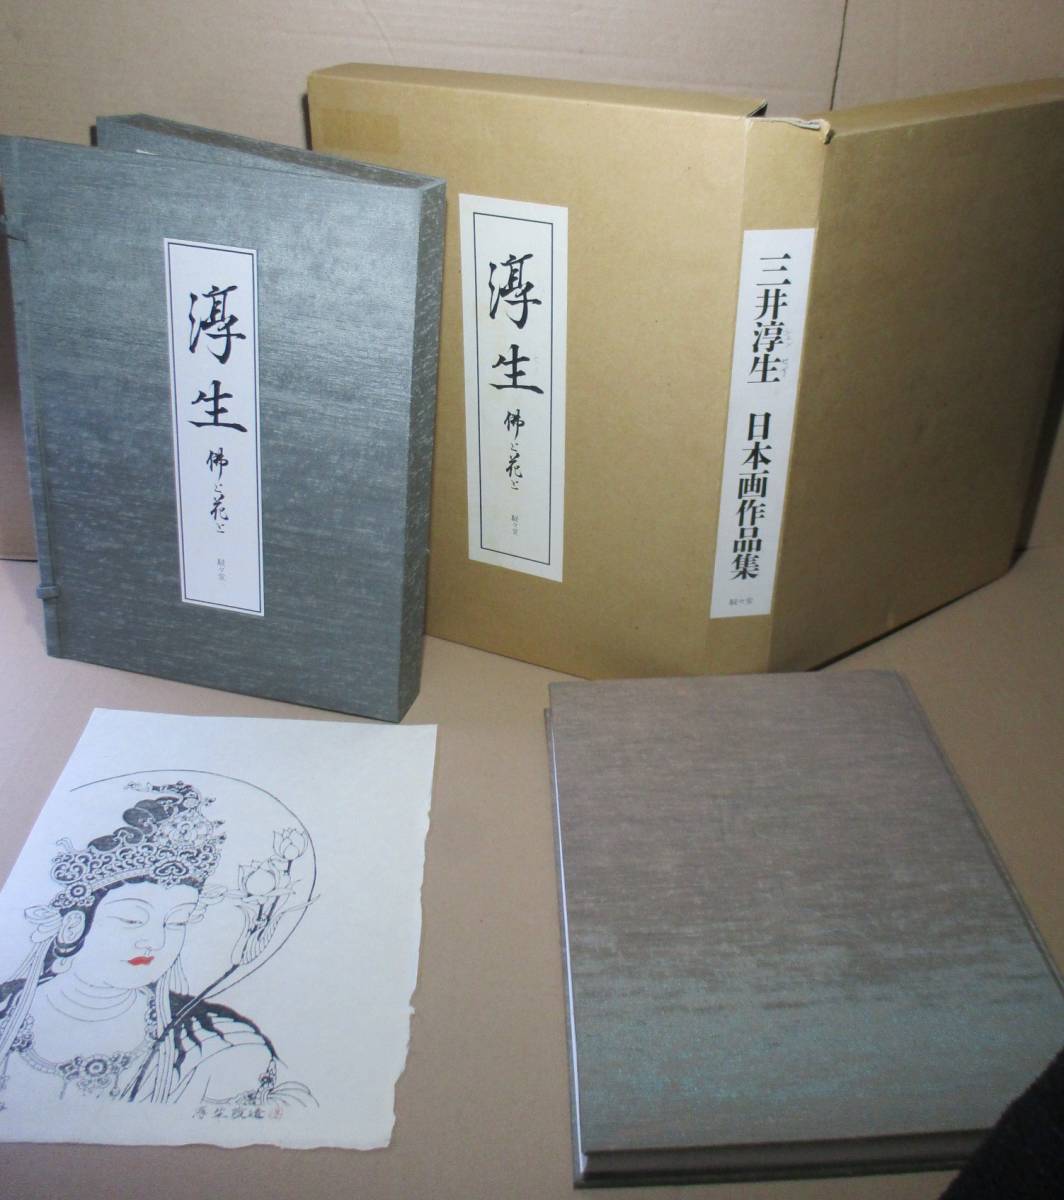 □ Édition limitée avec une estampe sur bois, Atsuo, Bouddha et fleurs d'Atsuo Mitsui ; Jinjindo, 1994 ; Édition originale avec surboite ; Le livre et le livre sont tous deux reliés en tissu ; Nommé par Michiaki Kitagawa ; Comprend 157 portraits photographiques en première page, Peinture, Livre d'art, Collection, Livre d'art